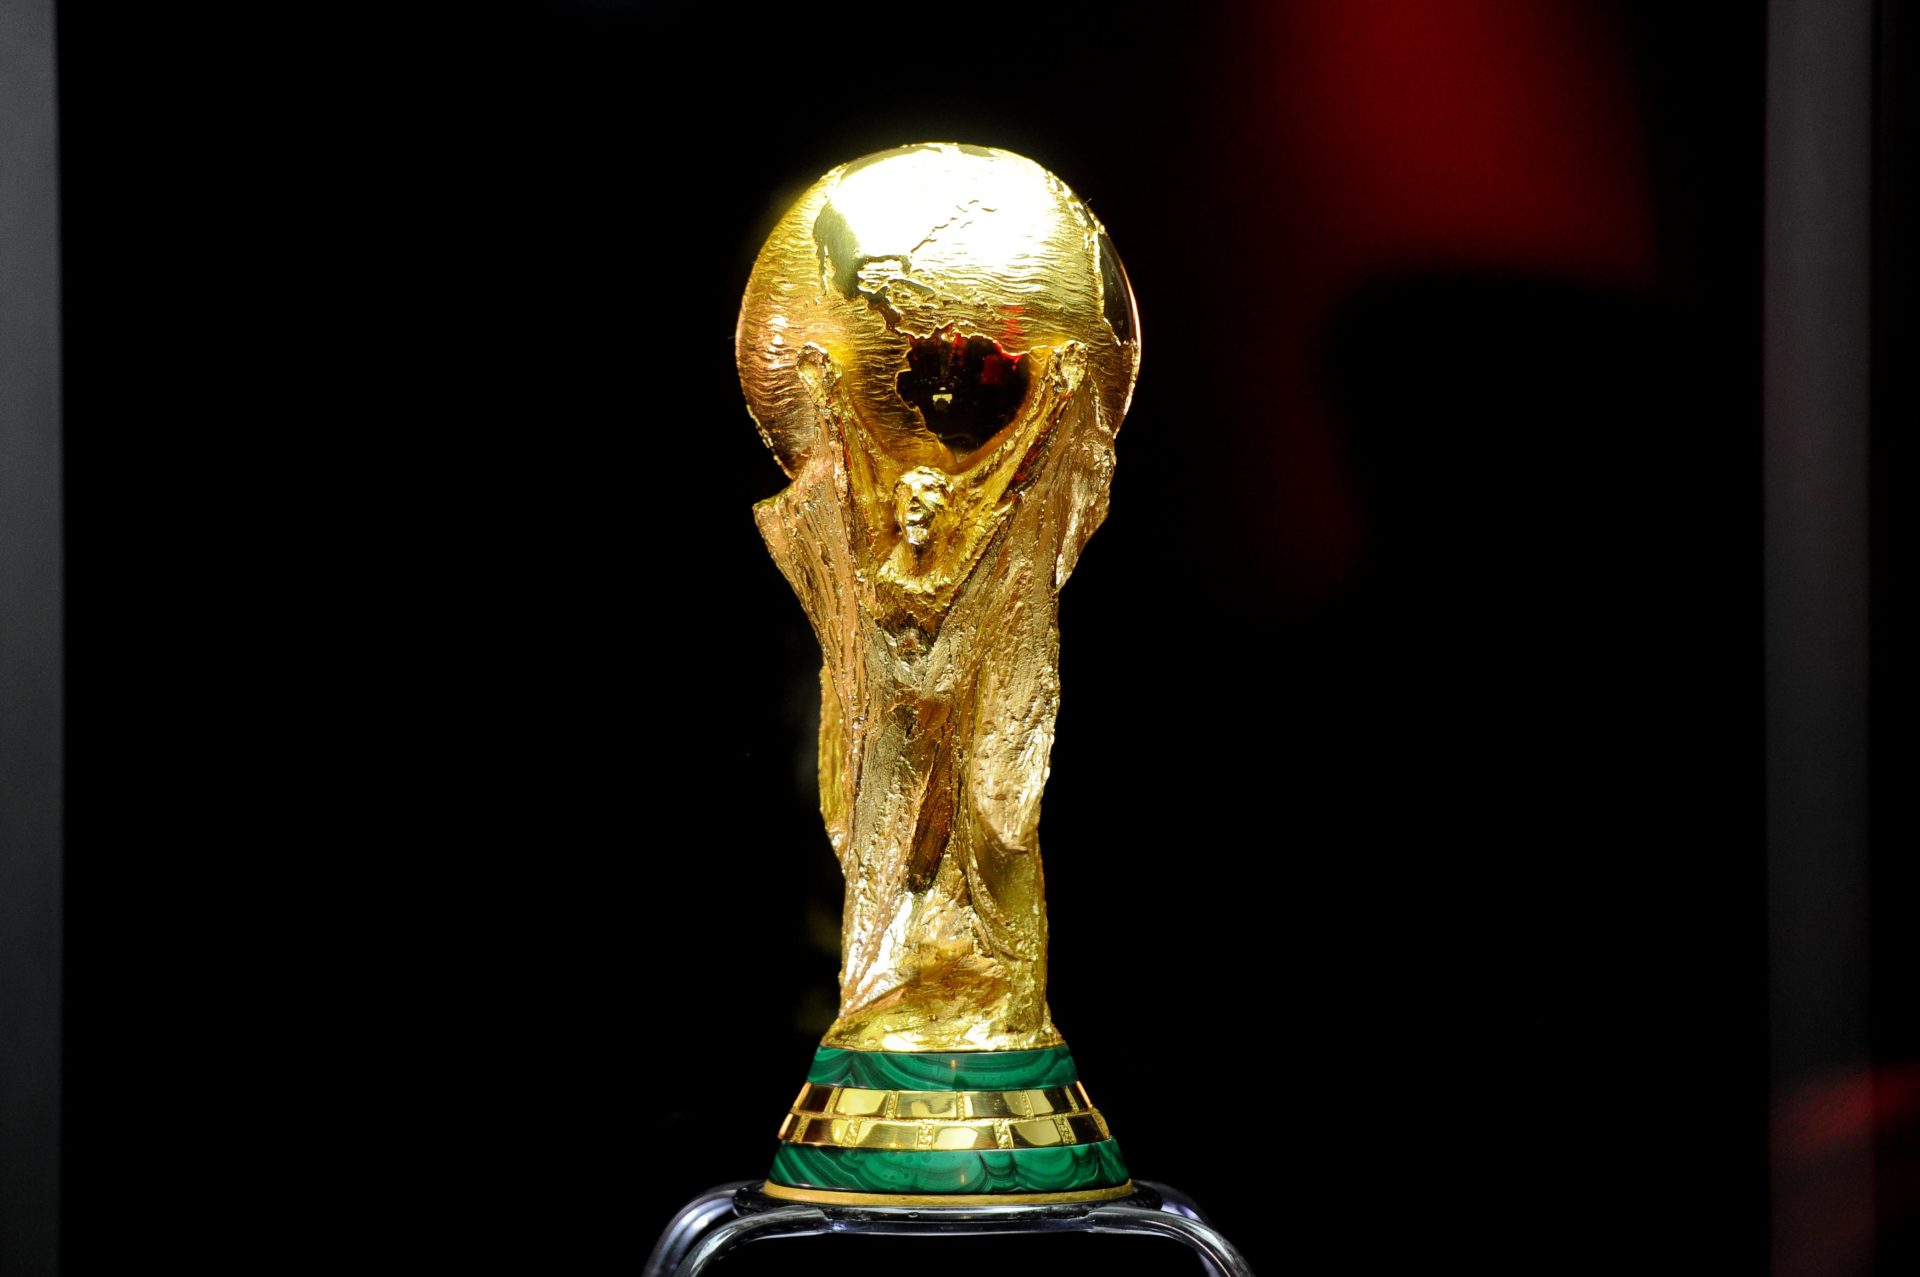 Copa do Mundo pode ter mais 40 jogos em 2026